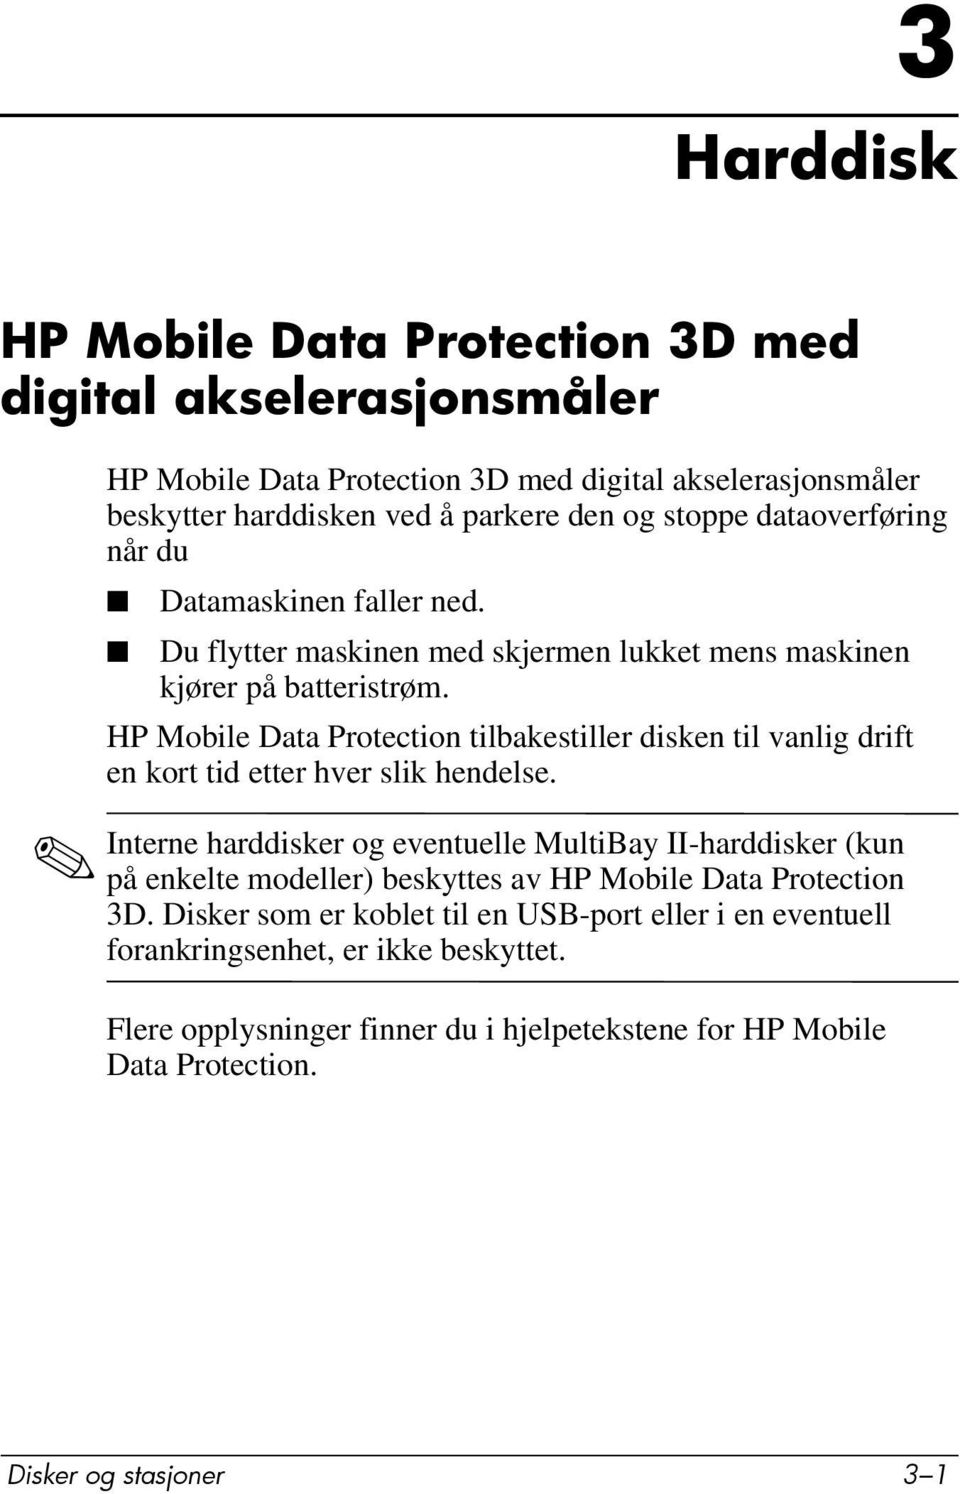 HP Mobile Data Protection tilbakestiller disken til vanlig drift en kort tid etter hver slik hendelse.